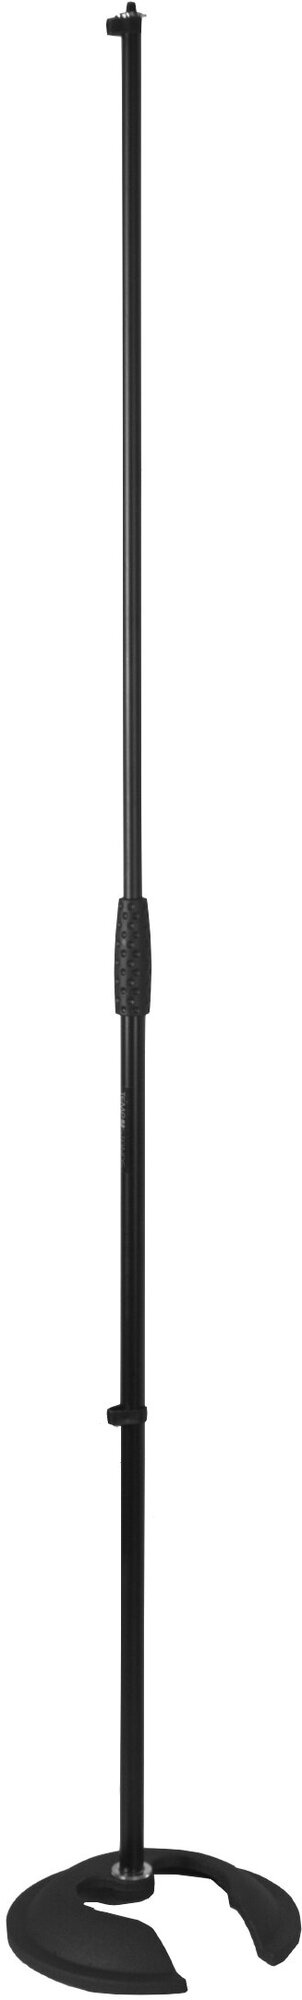 Микрофонная стойка TEMPO MS170 прямая